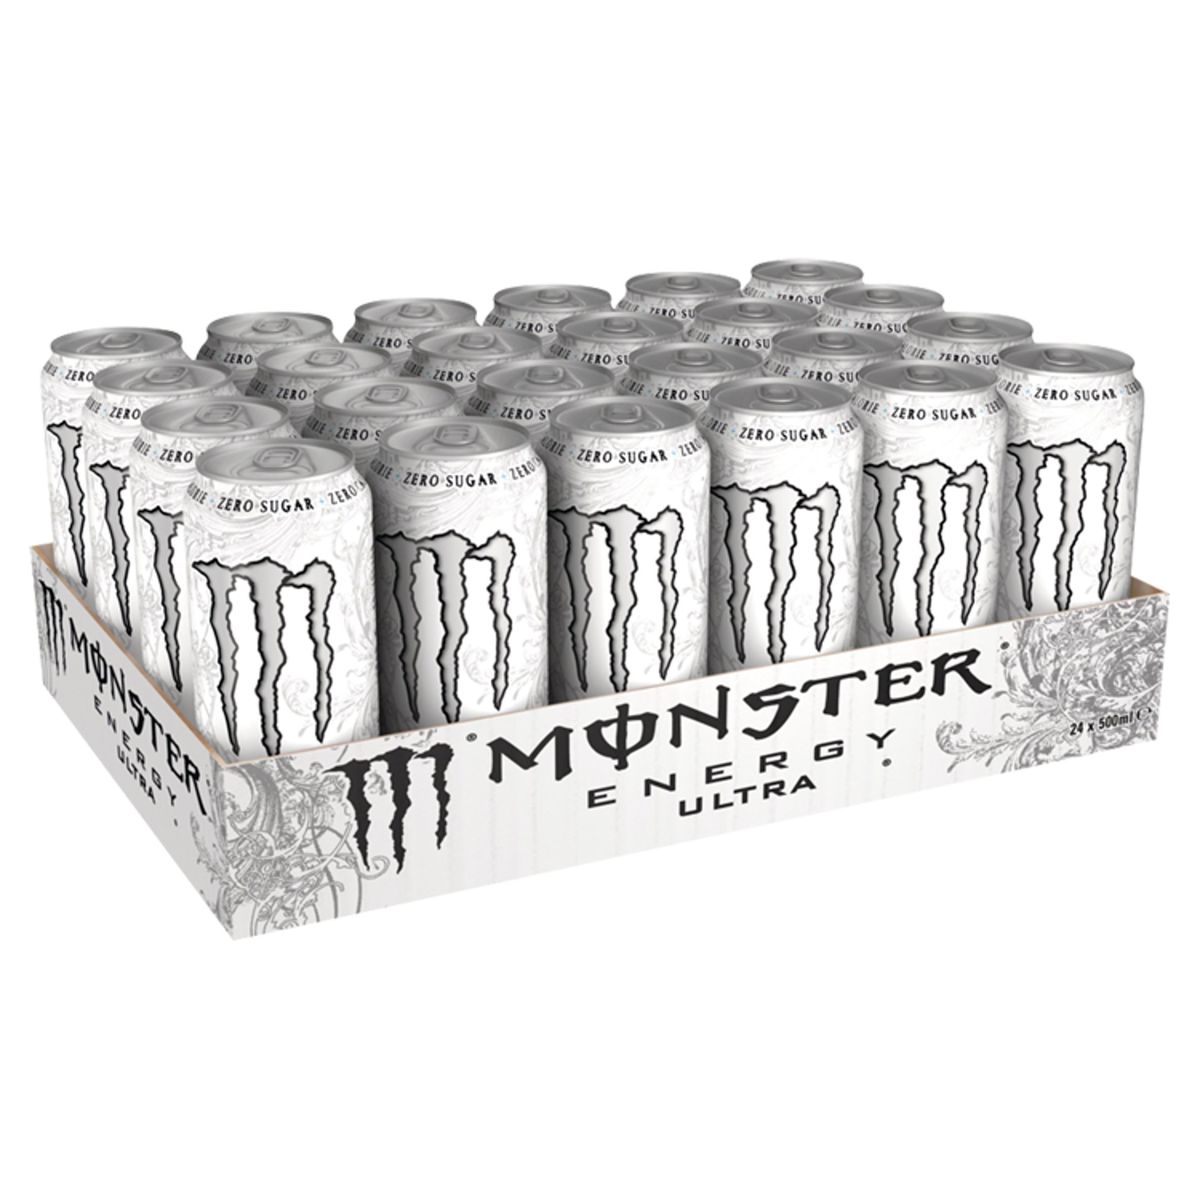 Monster Energy Drink Ultra Canette 500 ml